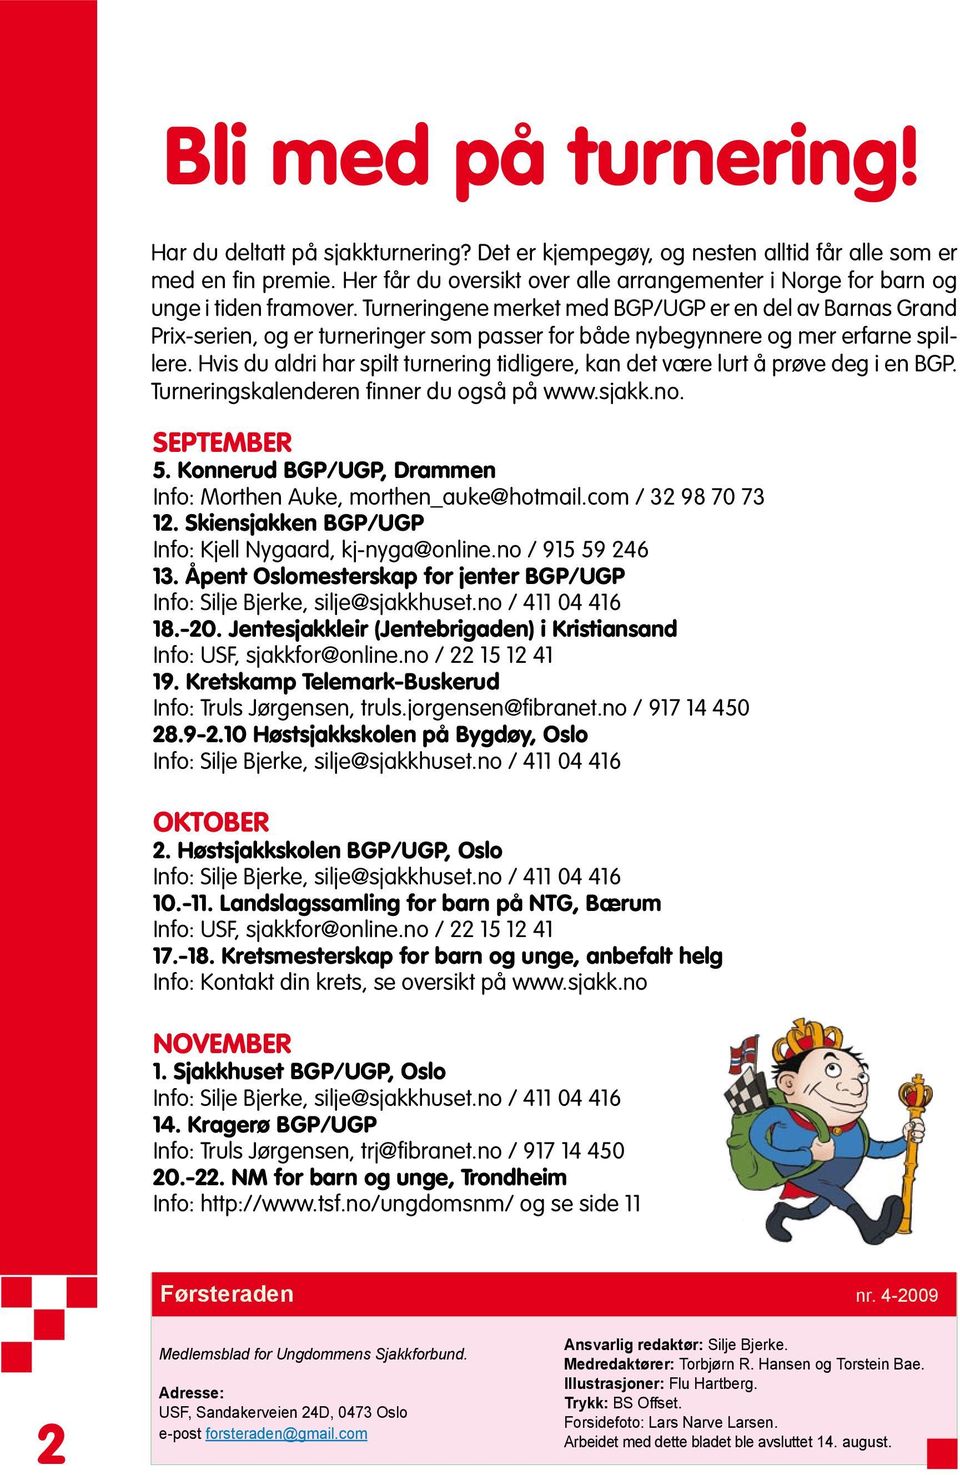 Turneringene merket med BGP/UGP er en del av Barnas Grand Prix-serien, og er turneringer som passer for både nybegynnere og mer erfarne spillere.